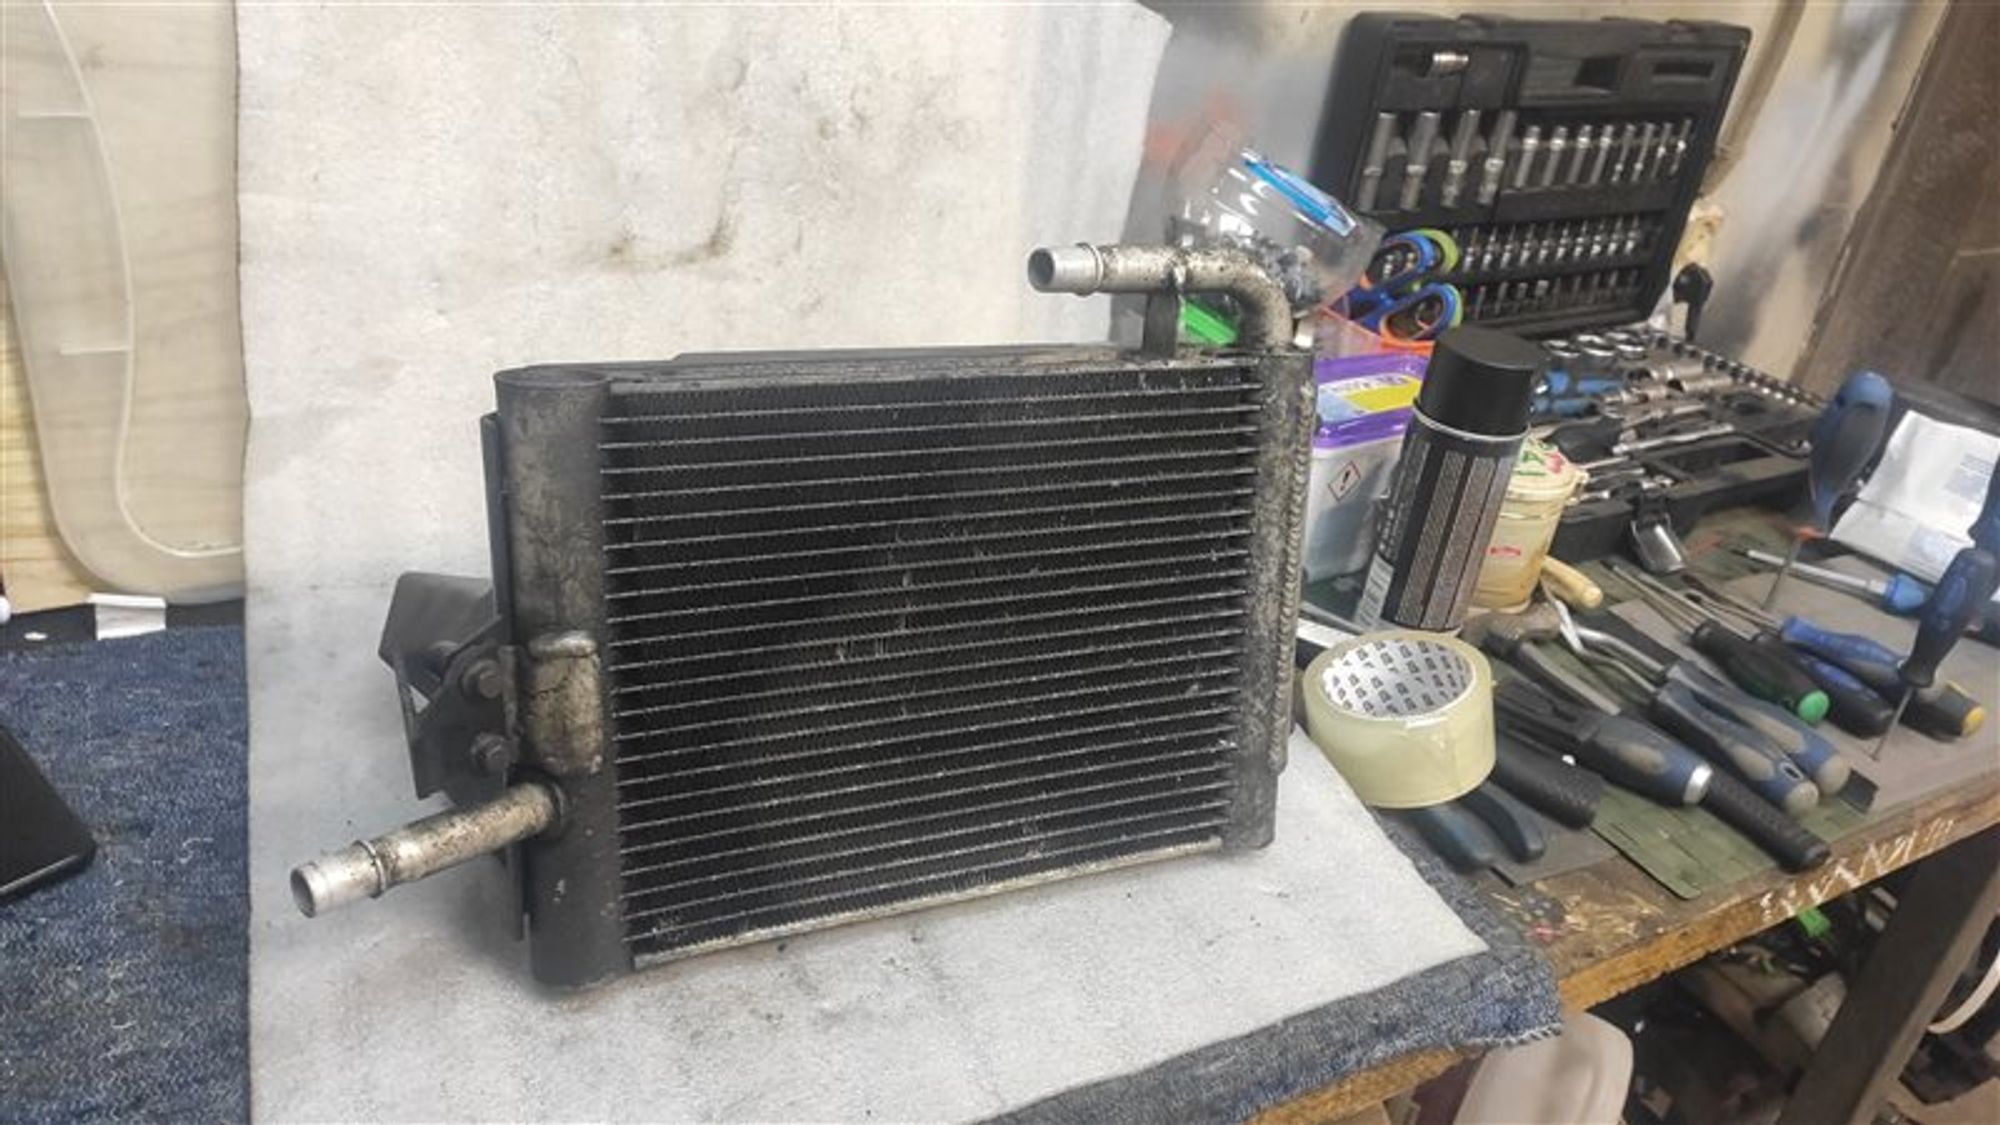 Радиатор двигателя L320 3.6 TD